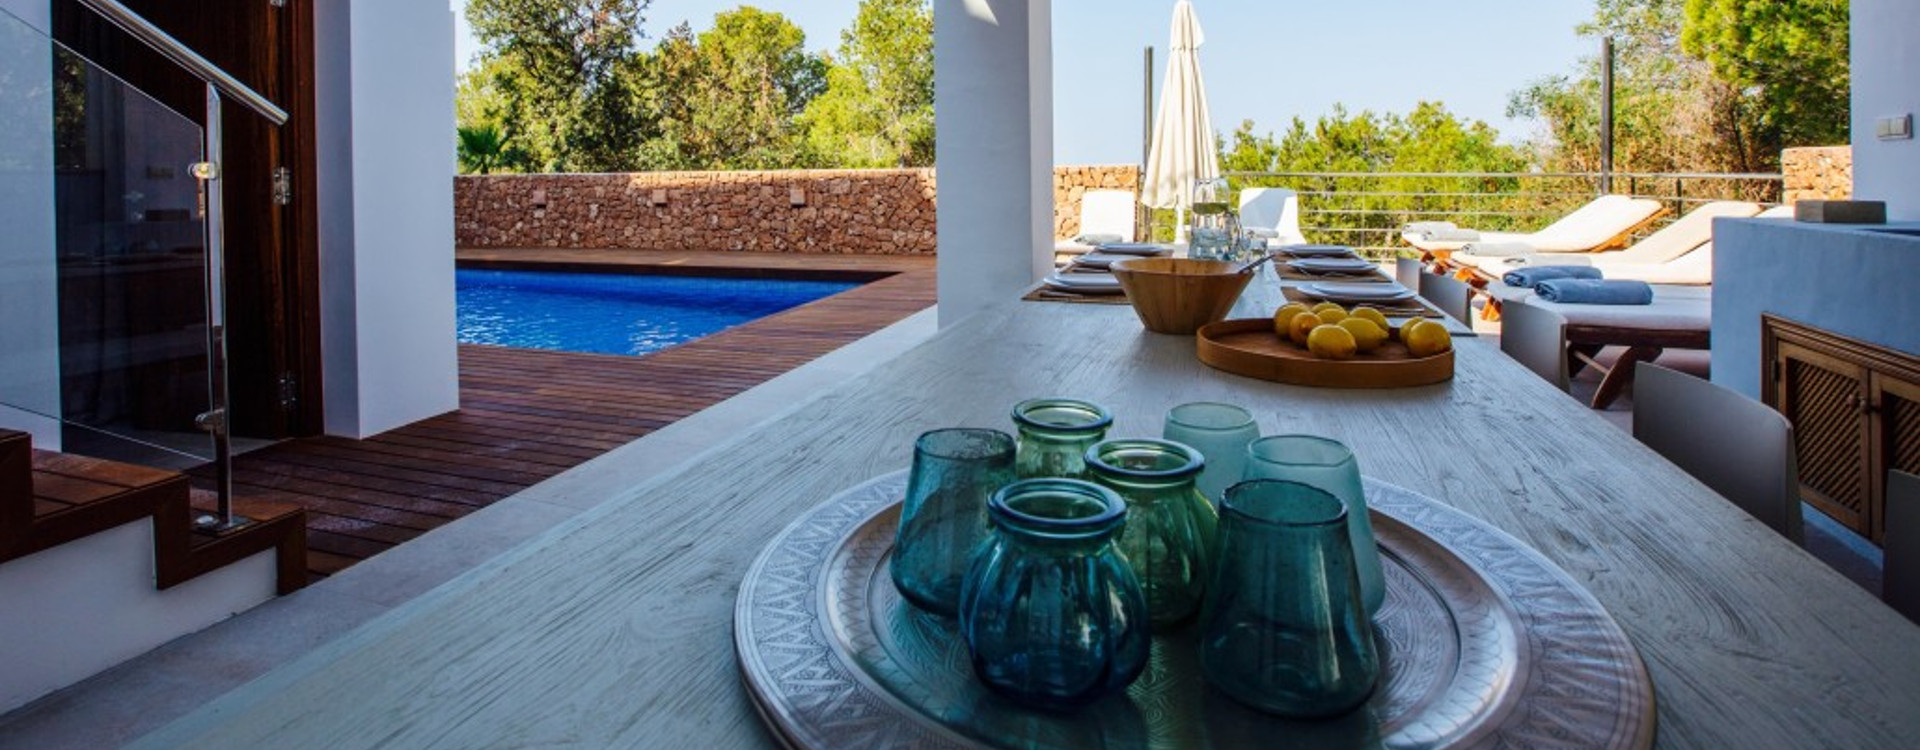 Villa Cala Salada Ibiza for rent